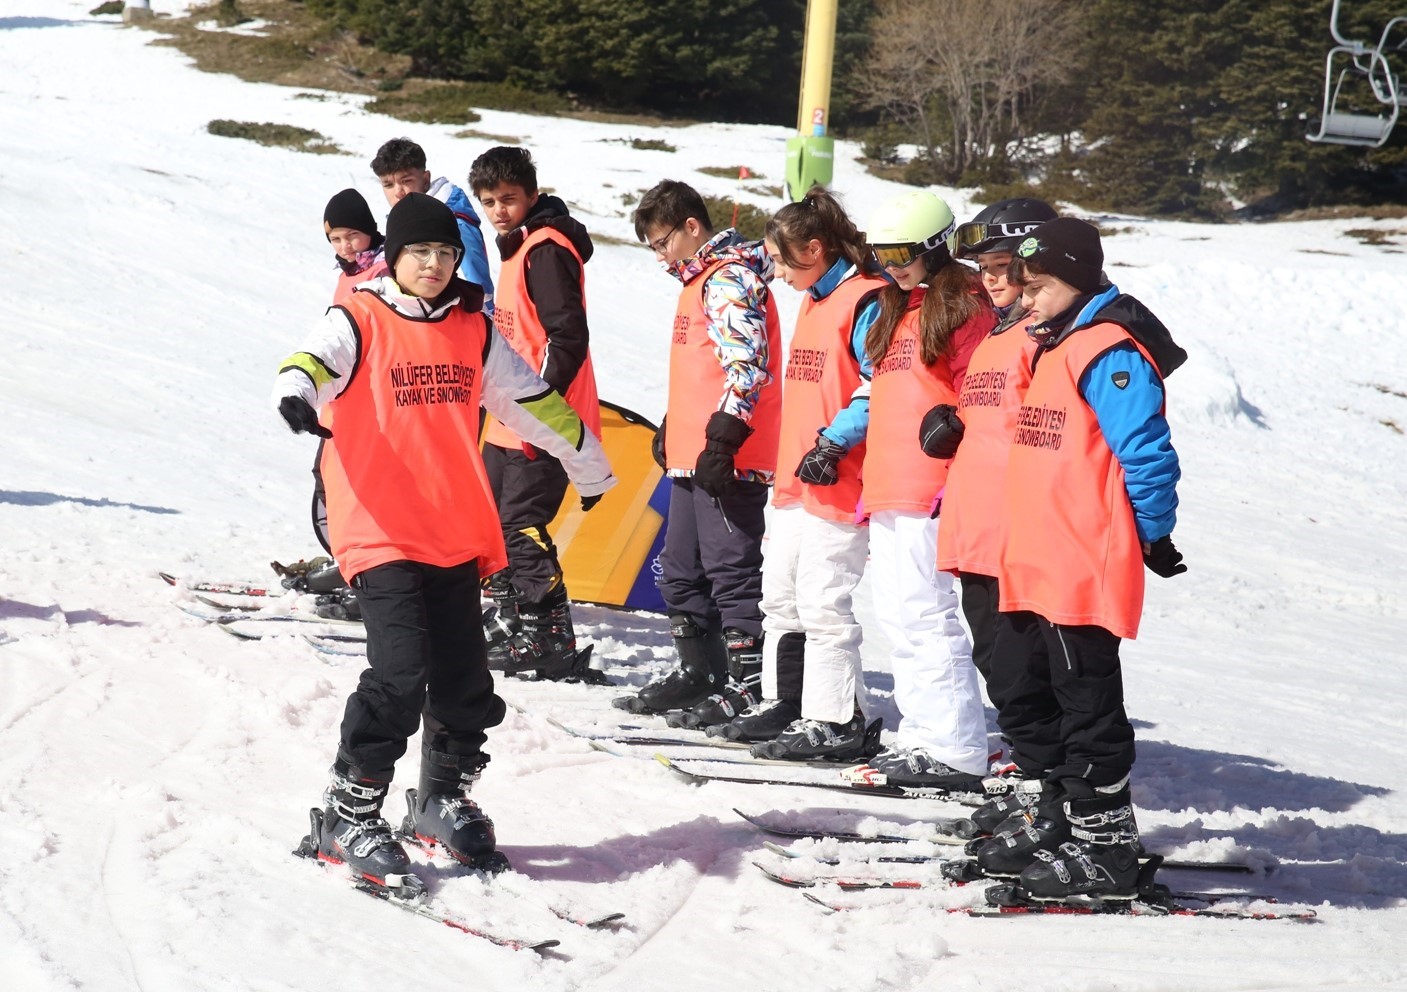 (Özel) Nilüfer’in kırsalındaki çocuklar Uludağ’ı ilk kez görüp kayak yapmayı öğreniyor